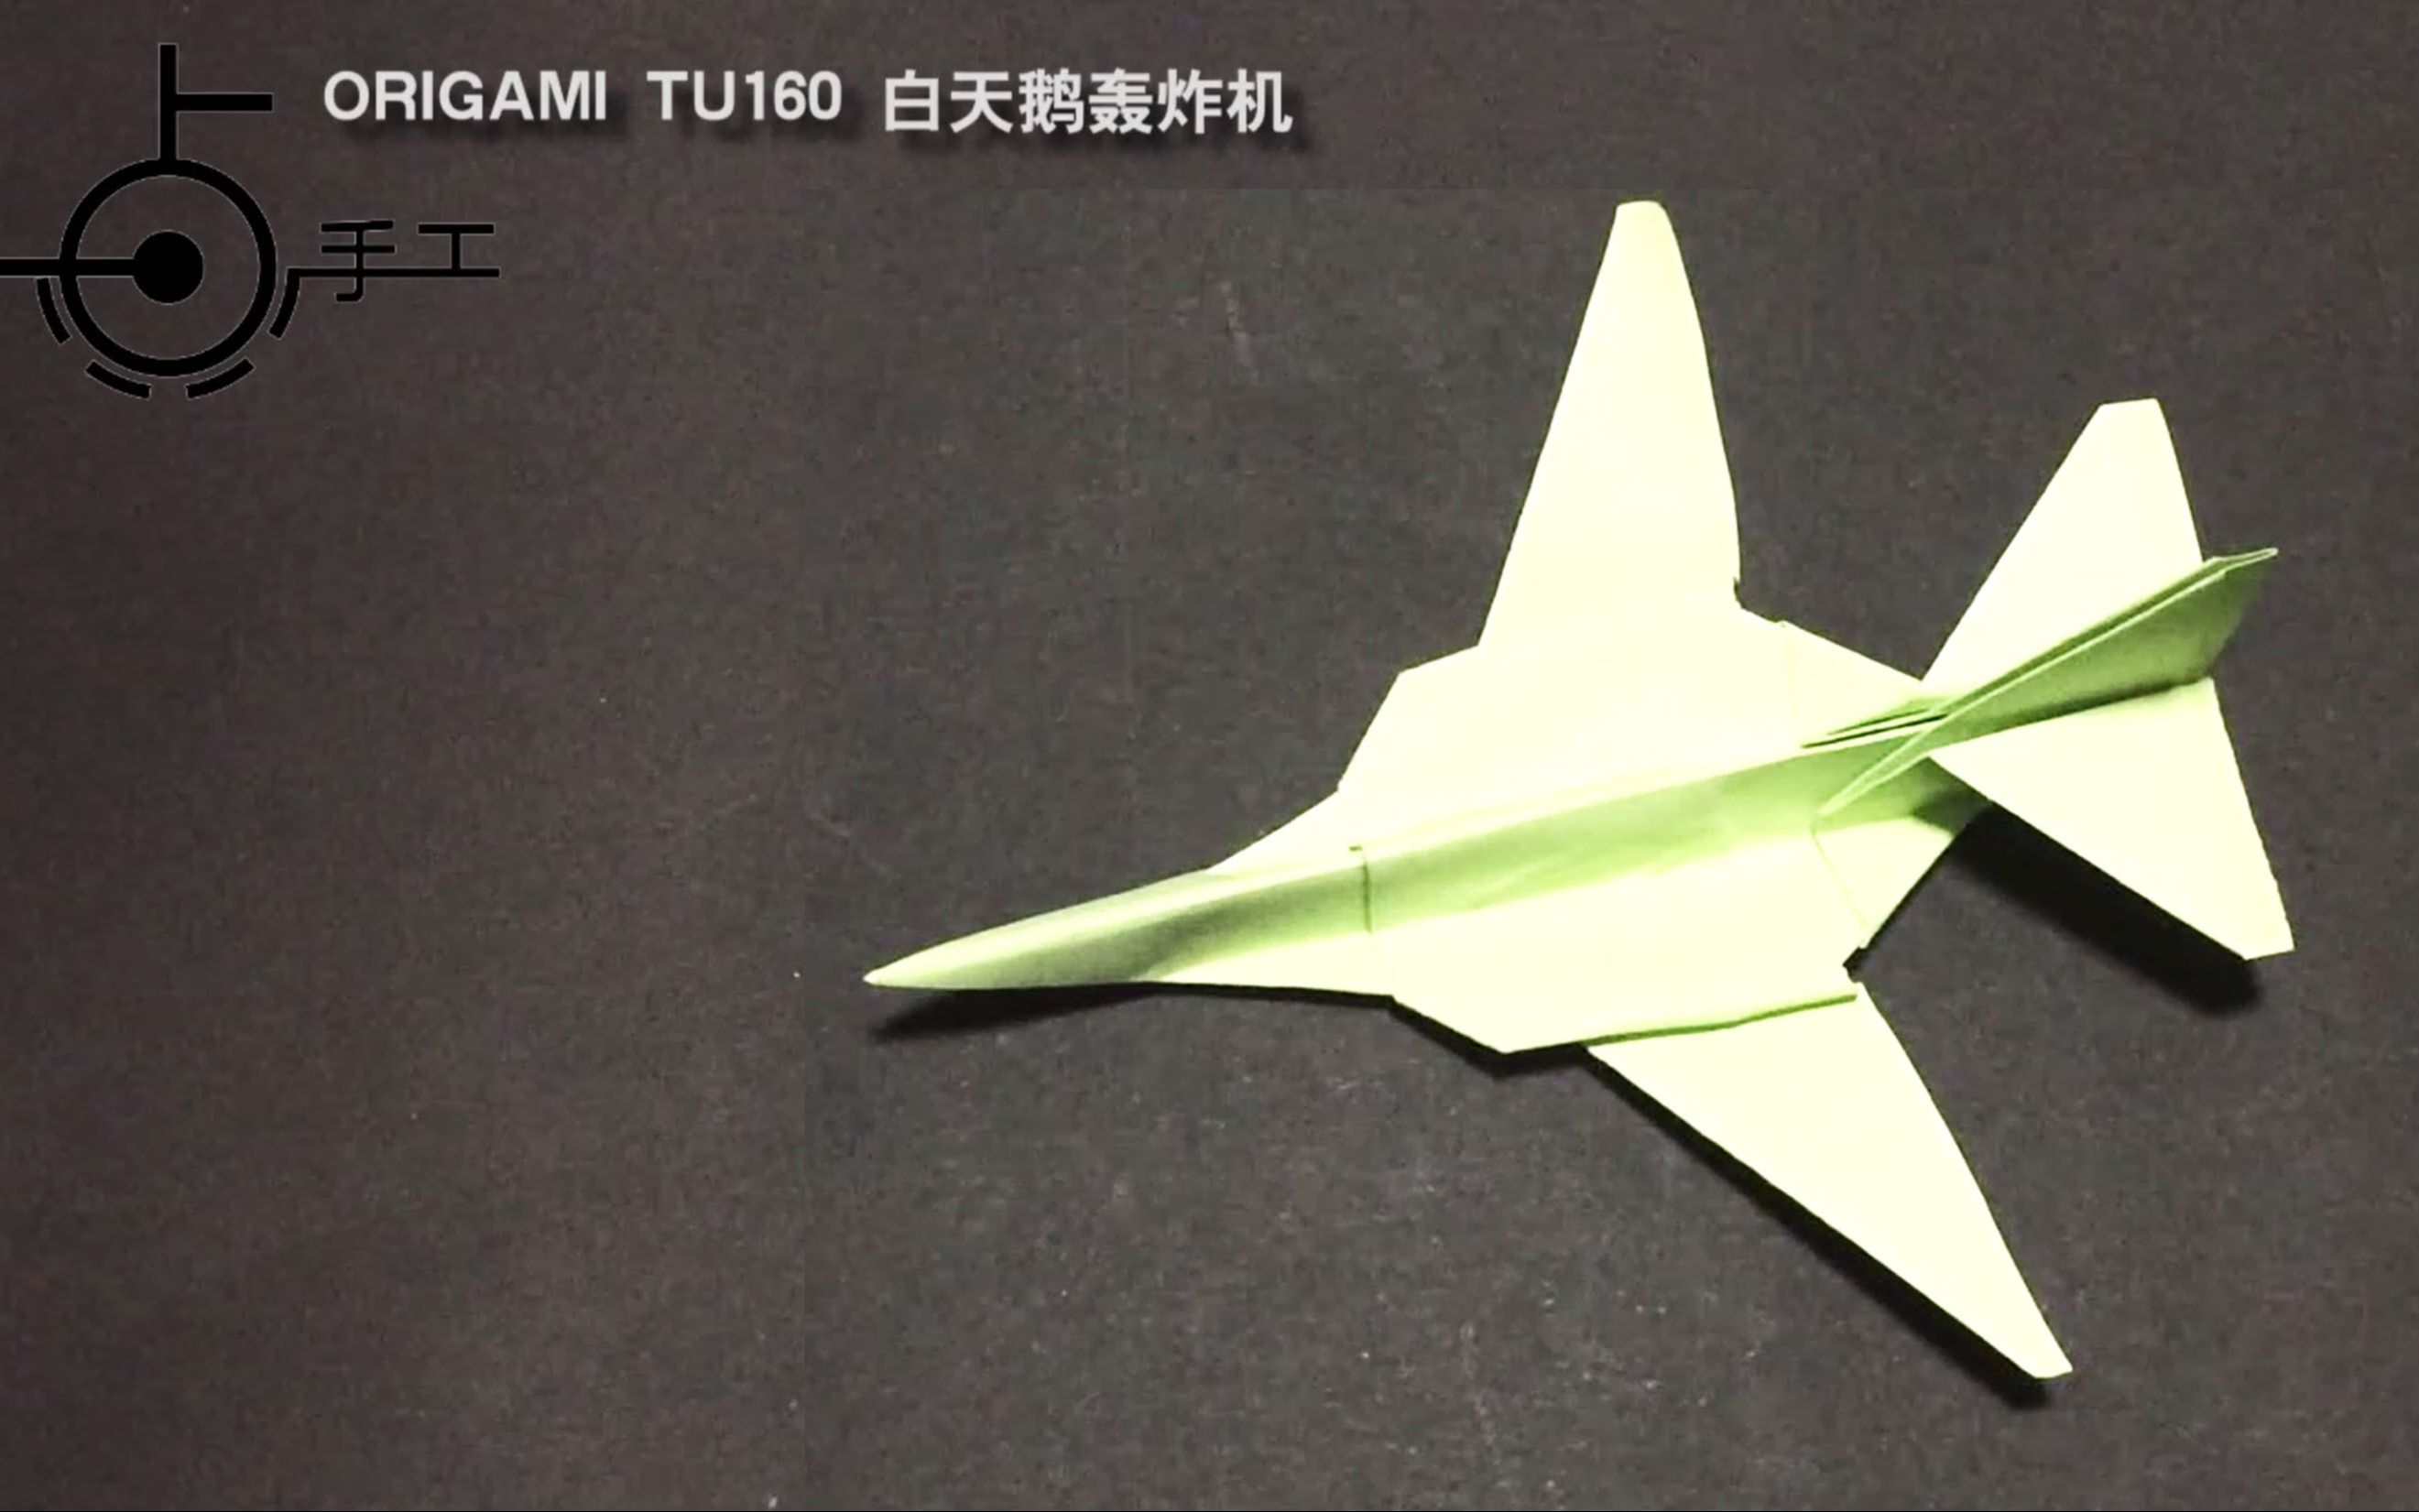 俄罗斯图160轰炸机手工折纸制作,绰号白天鹅,姿态优雅,尝试做一个吧